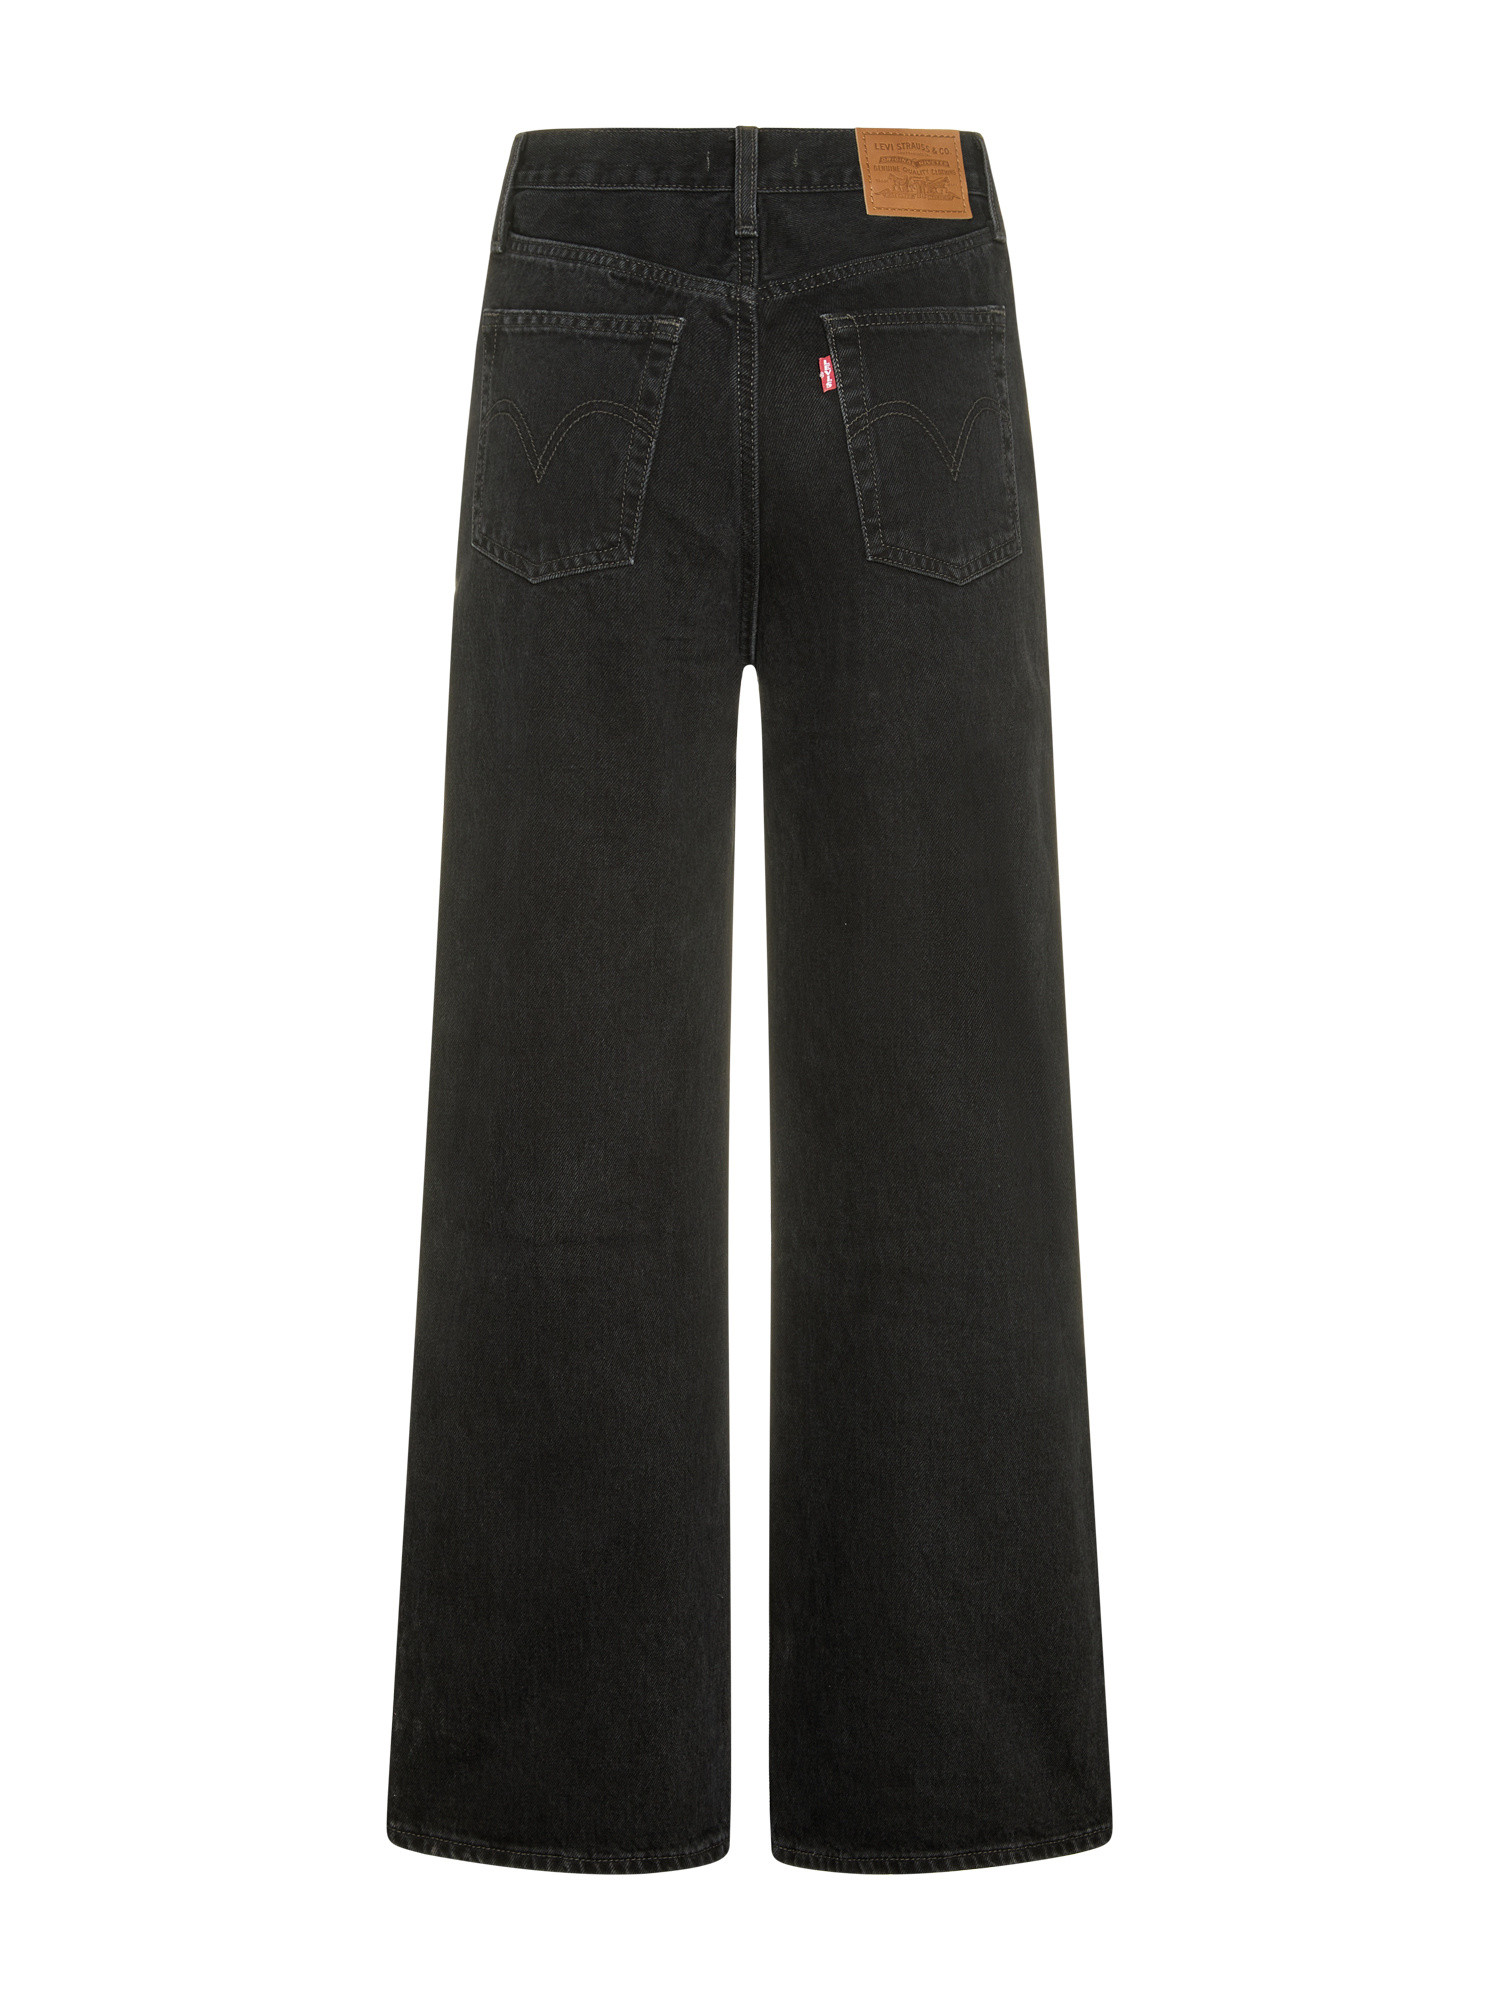 Levi's - Wide leg ribcage jeans, Black, large image number 1